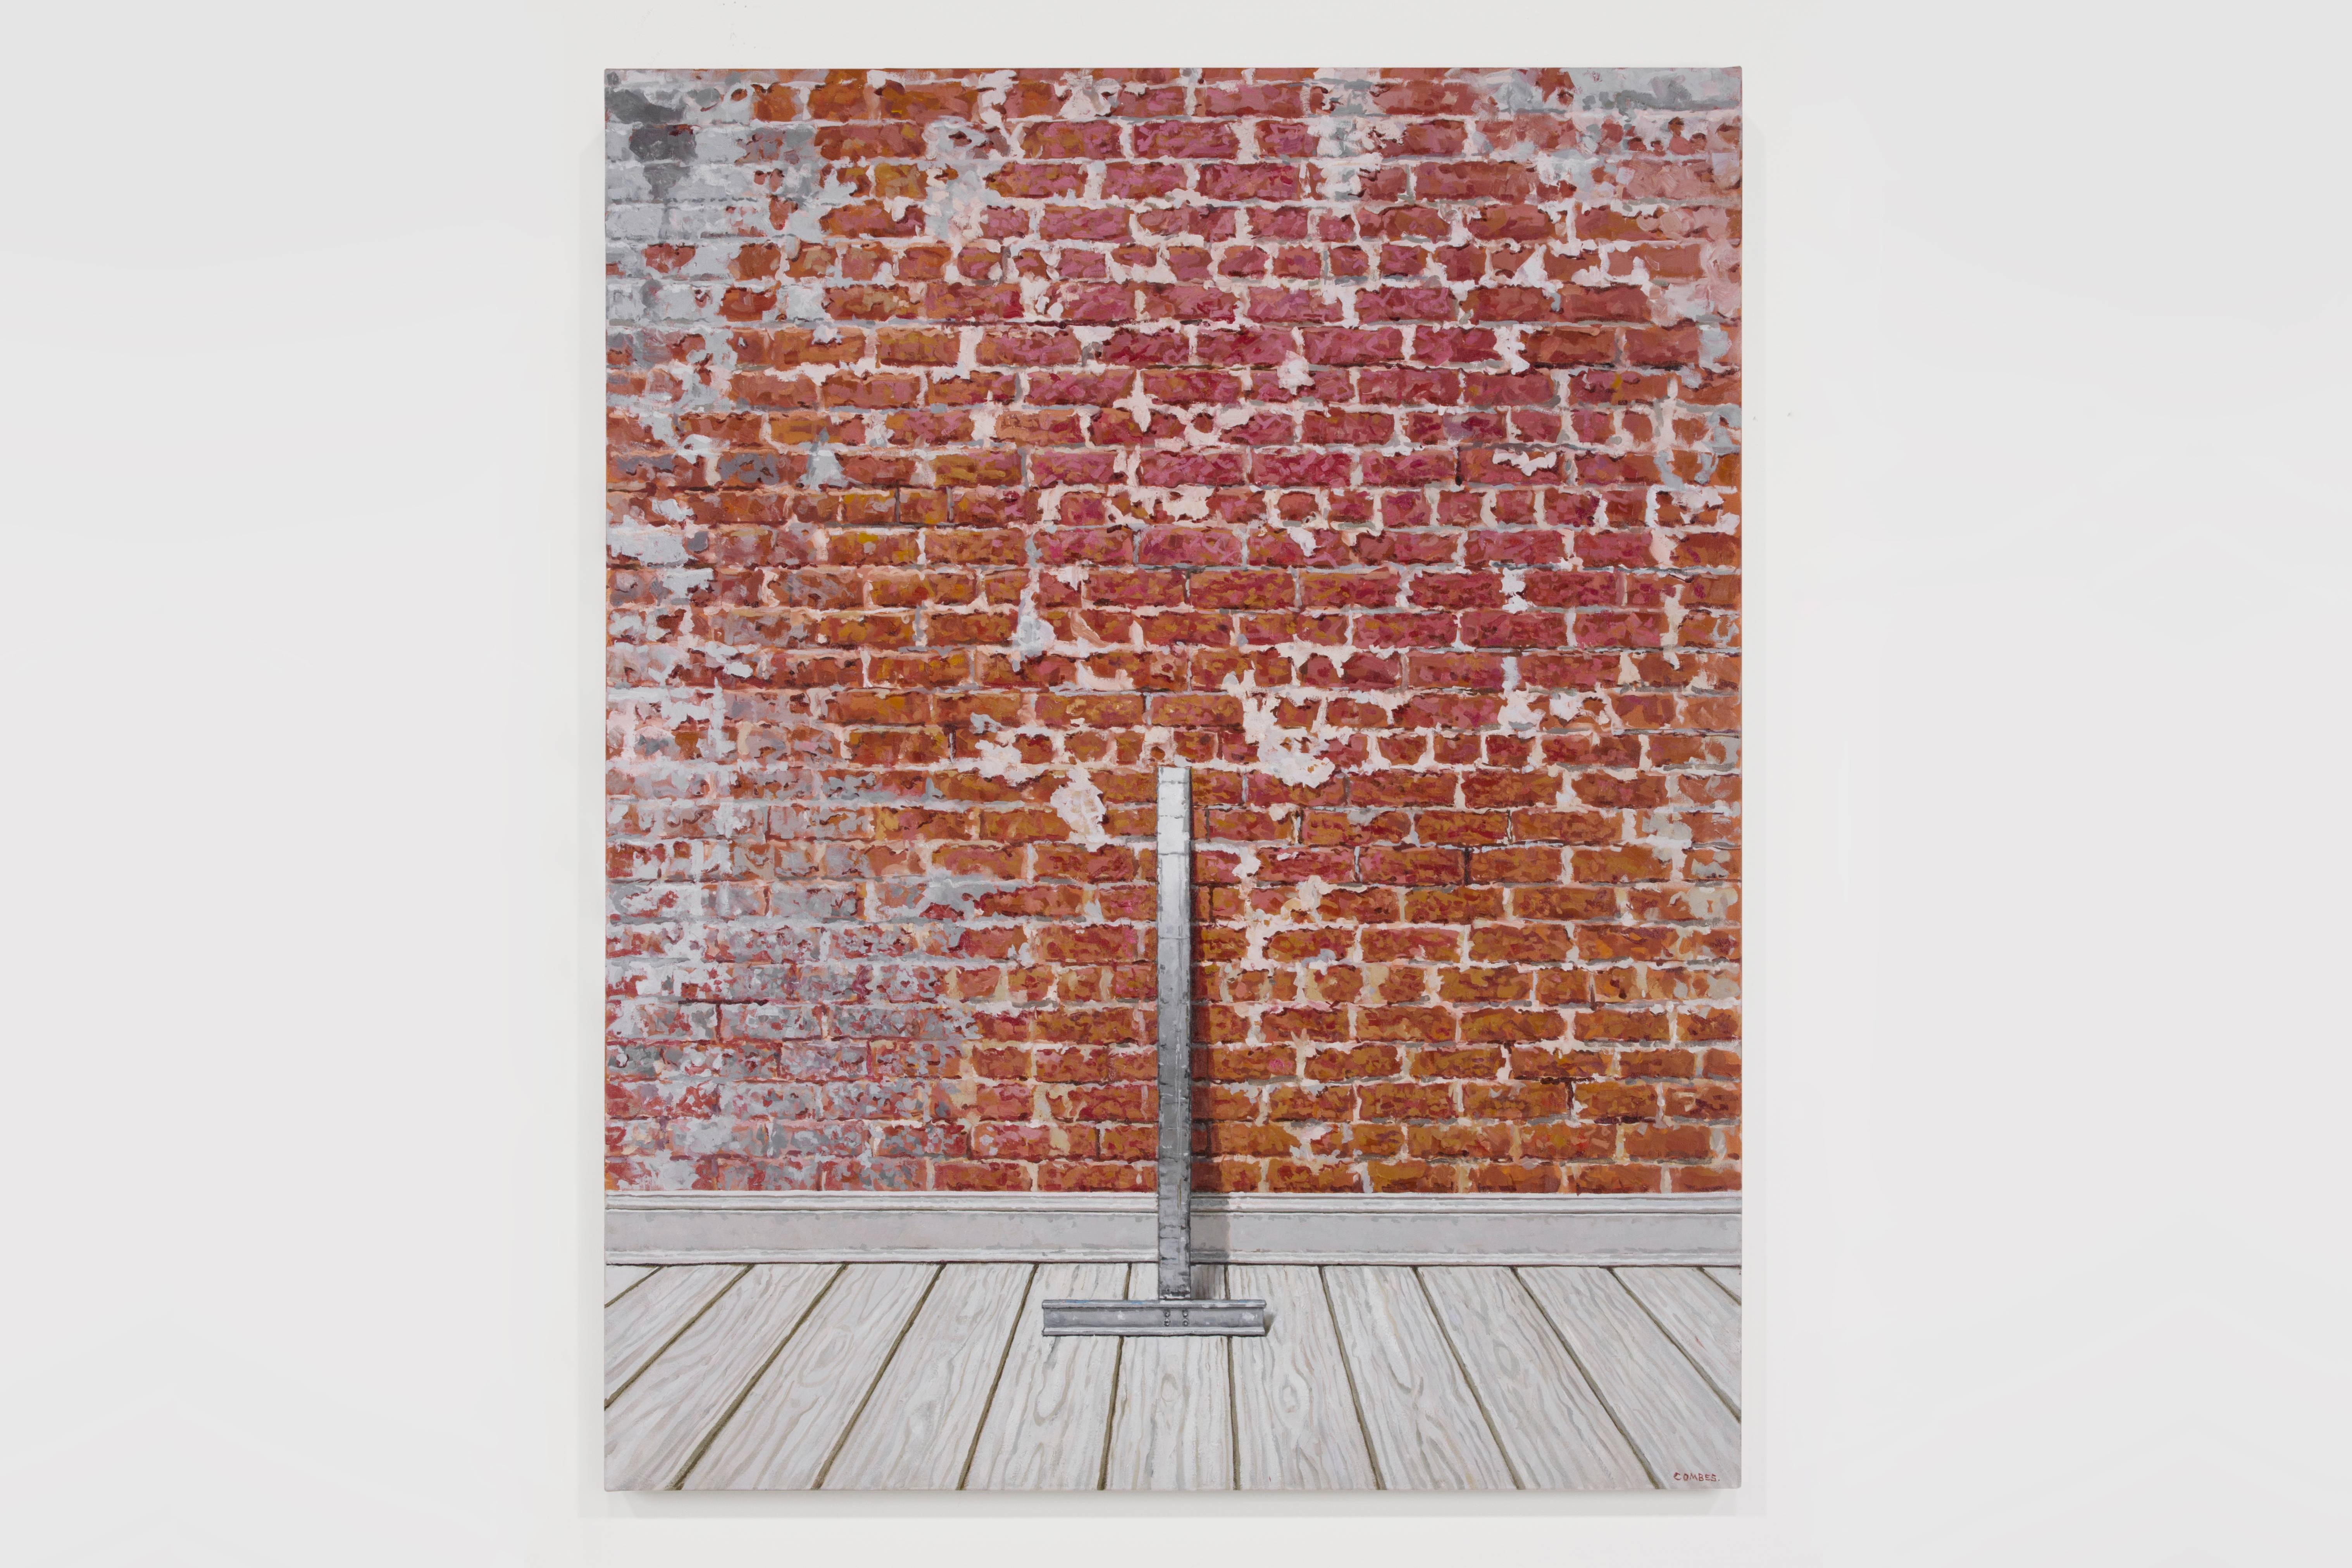 POINT CENTRAL - Photorealism / Mur de briques rouges apparentes / Contraste - Painting de Richard Combes